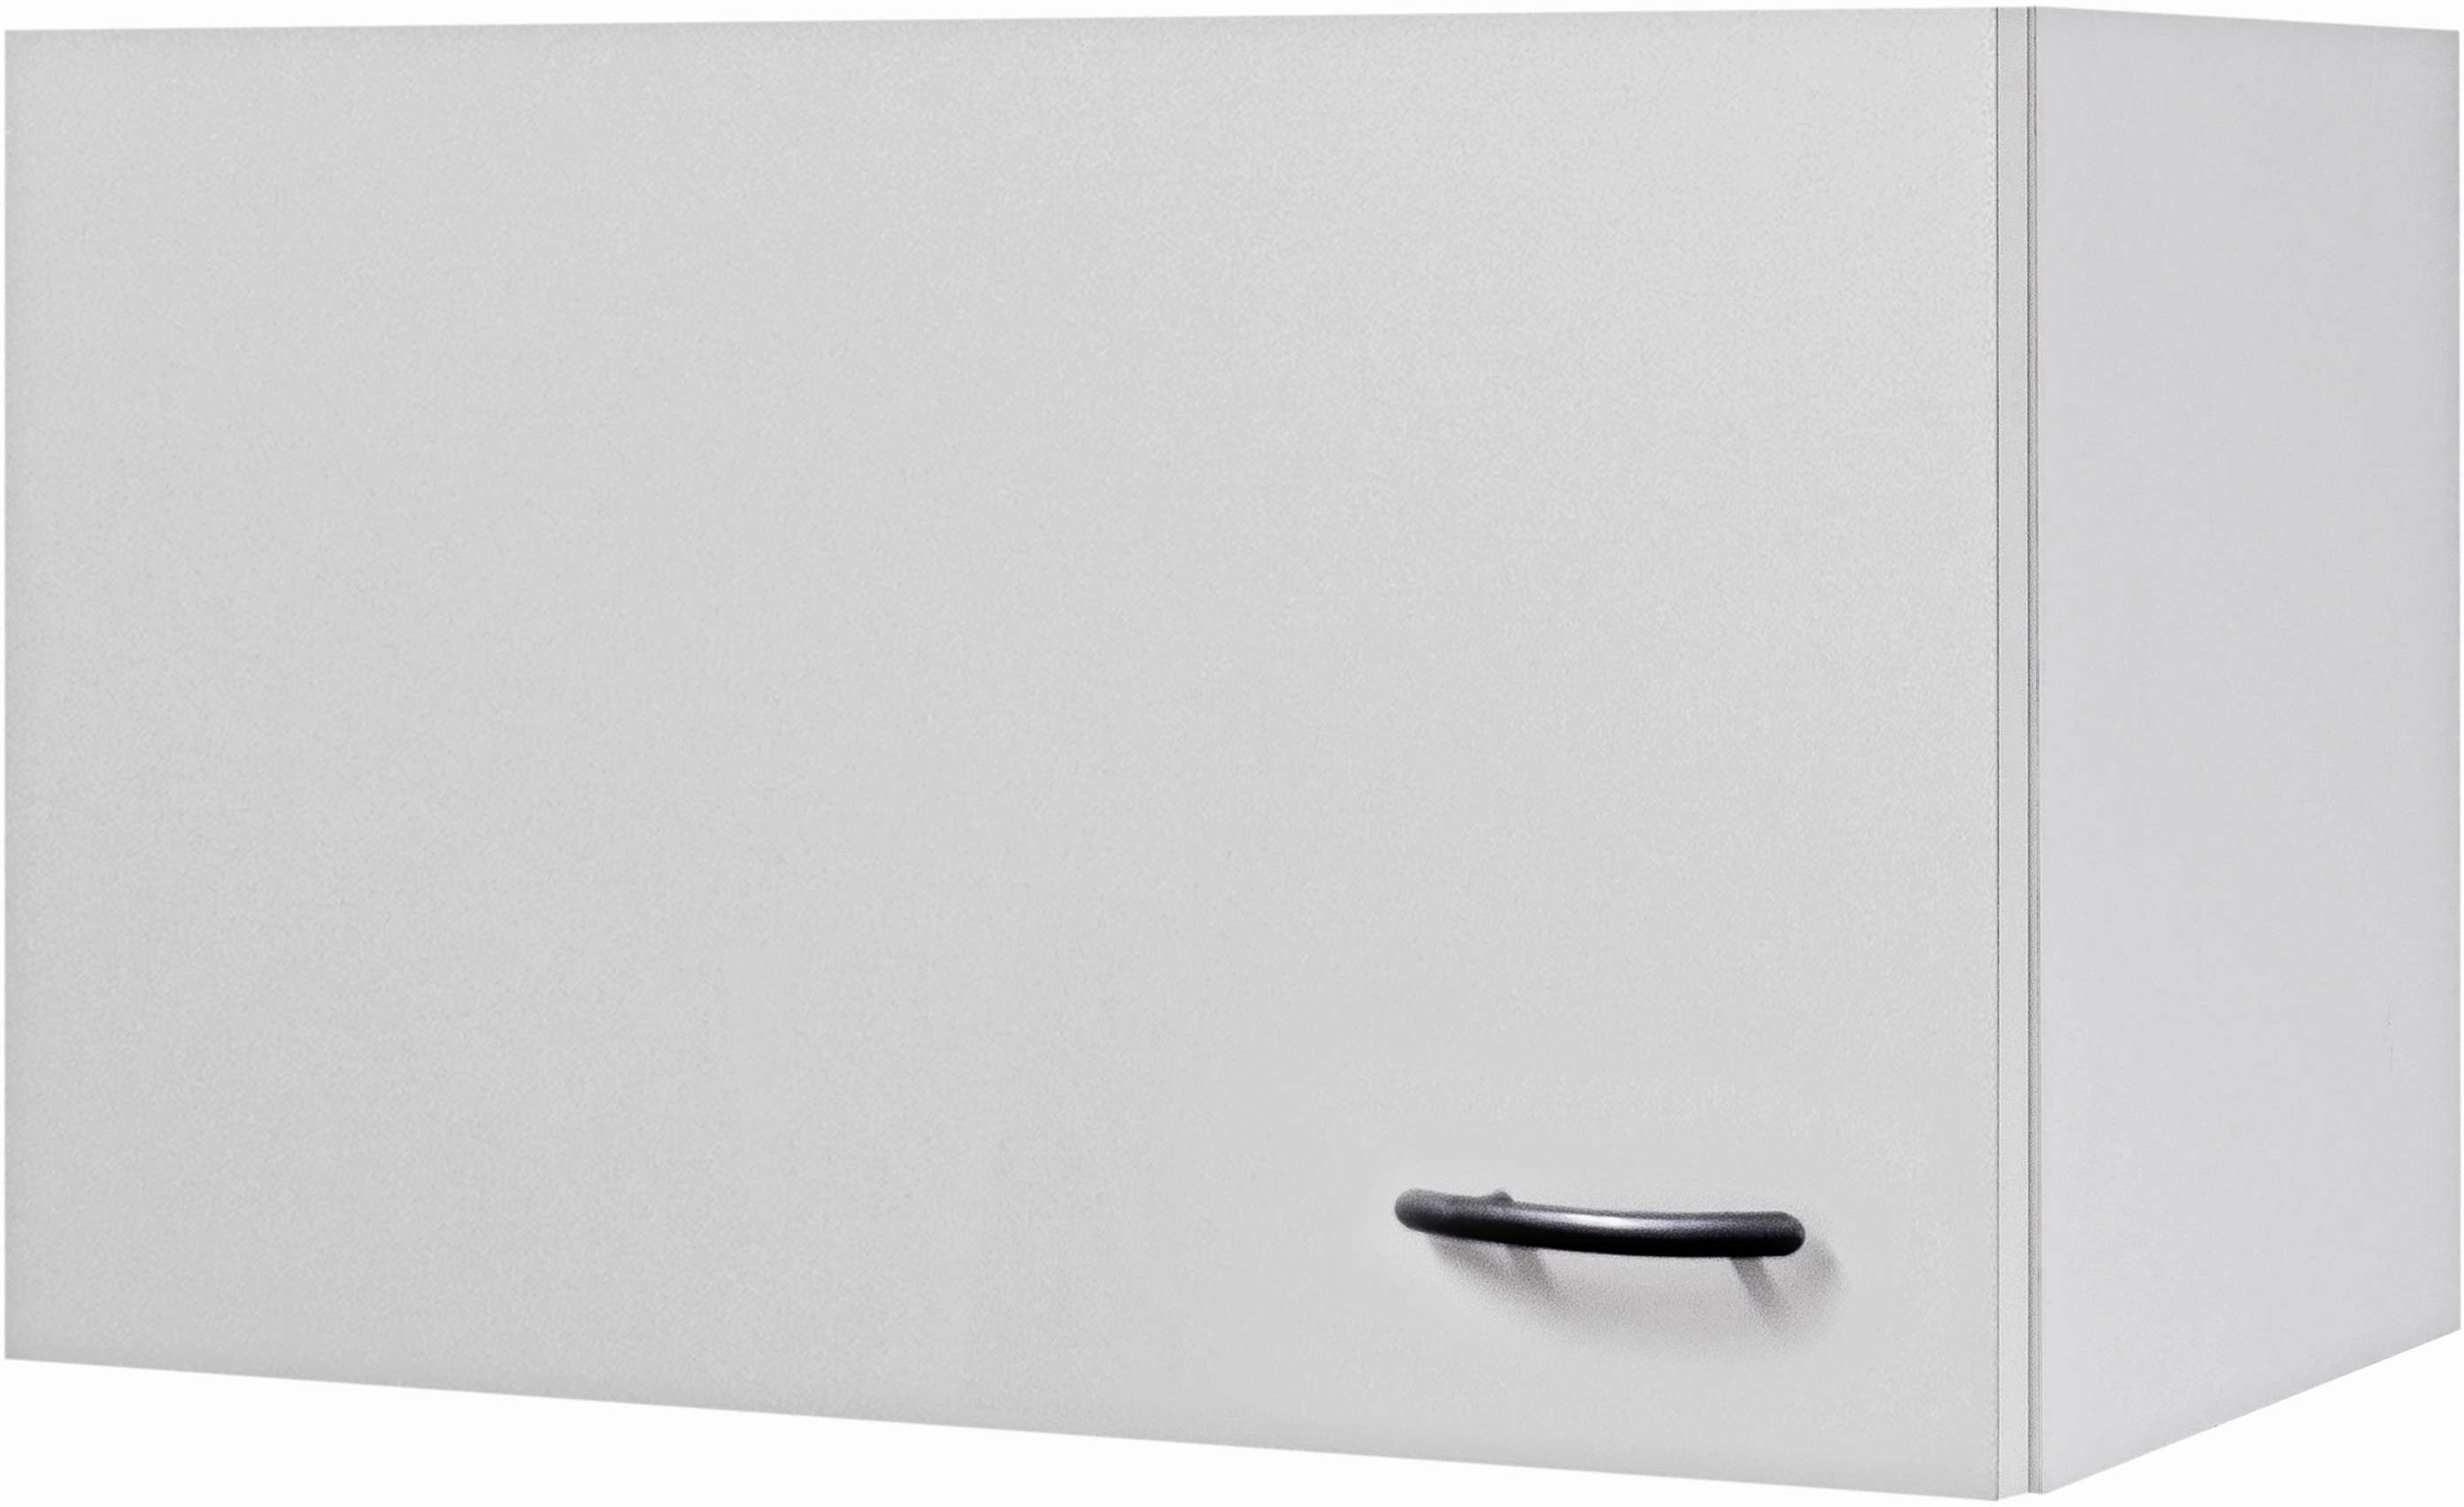 Flex-Well Classic Kurz-Hängeschrank Wito 60 cm Weiß kaufen bei OBI